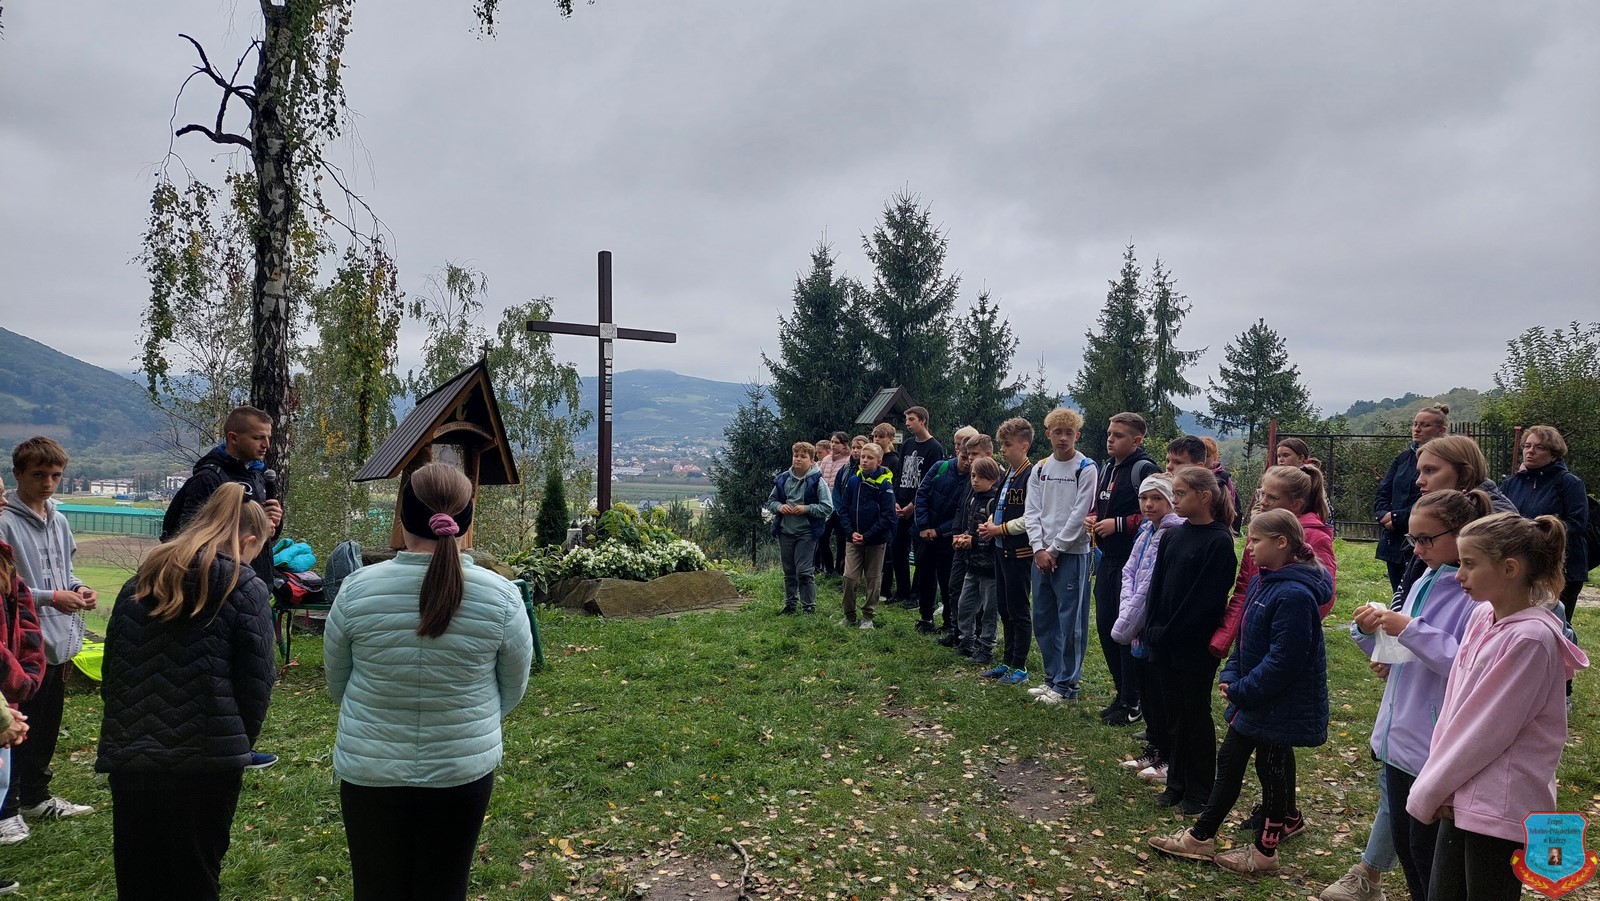 XXII Zlot Turystyczno-Krajoznawczy - modlitwa młodzieży na górze Zyndrama